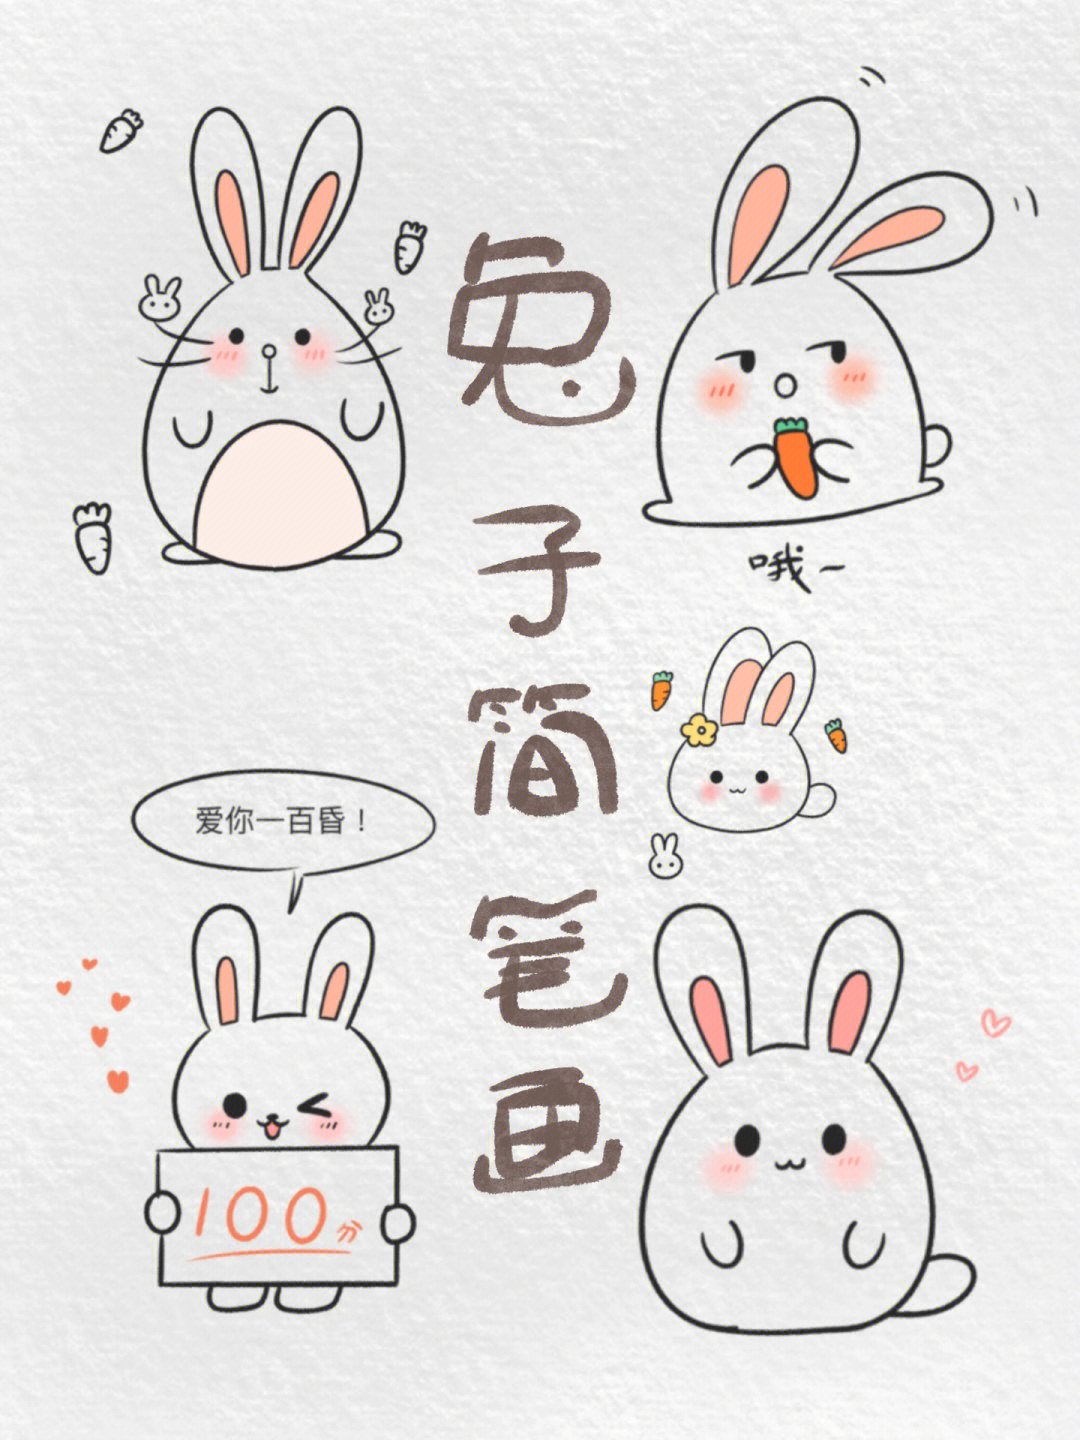 简笔画小兔子表情包系列